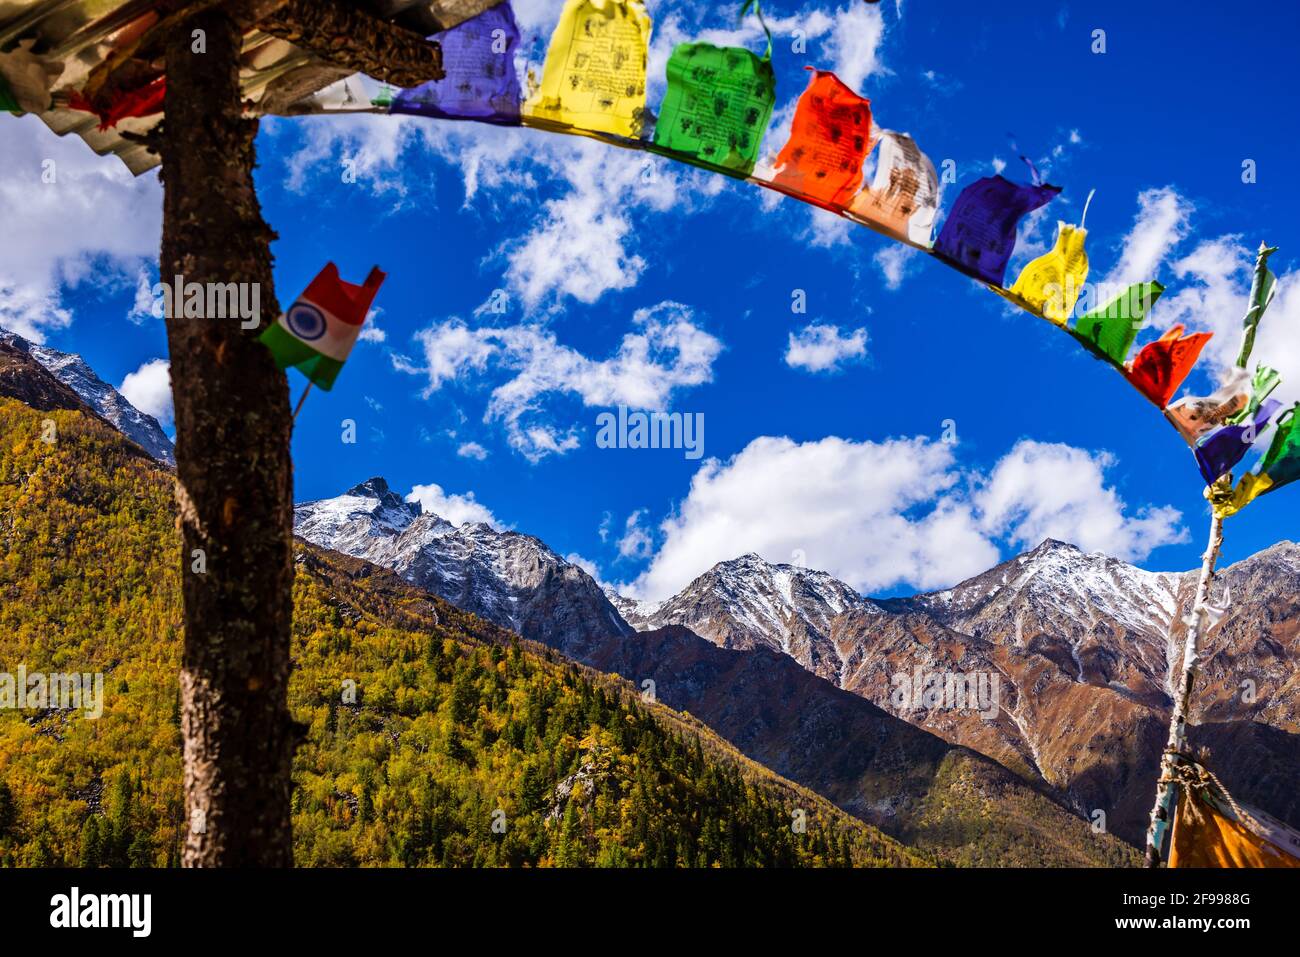 Bandiere di preghiera colorate che volano in venti con le montagne di Himalaya sullo sfondo del villaggio di Chitkul nella regione di Kinnaur di Himachal Pradesh, India. Foto Stock